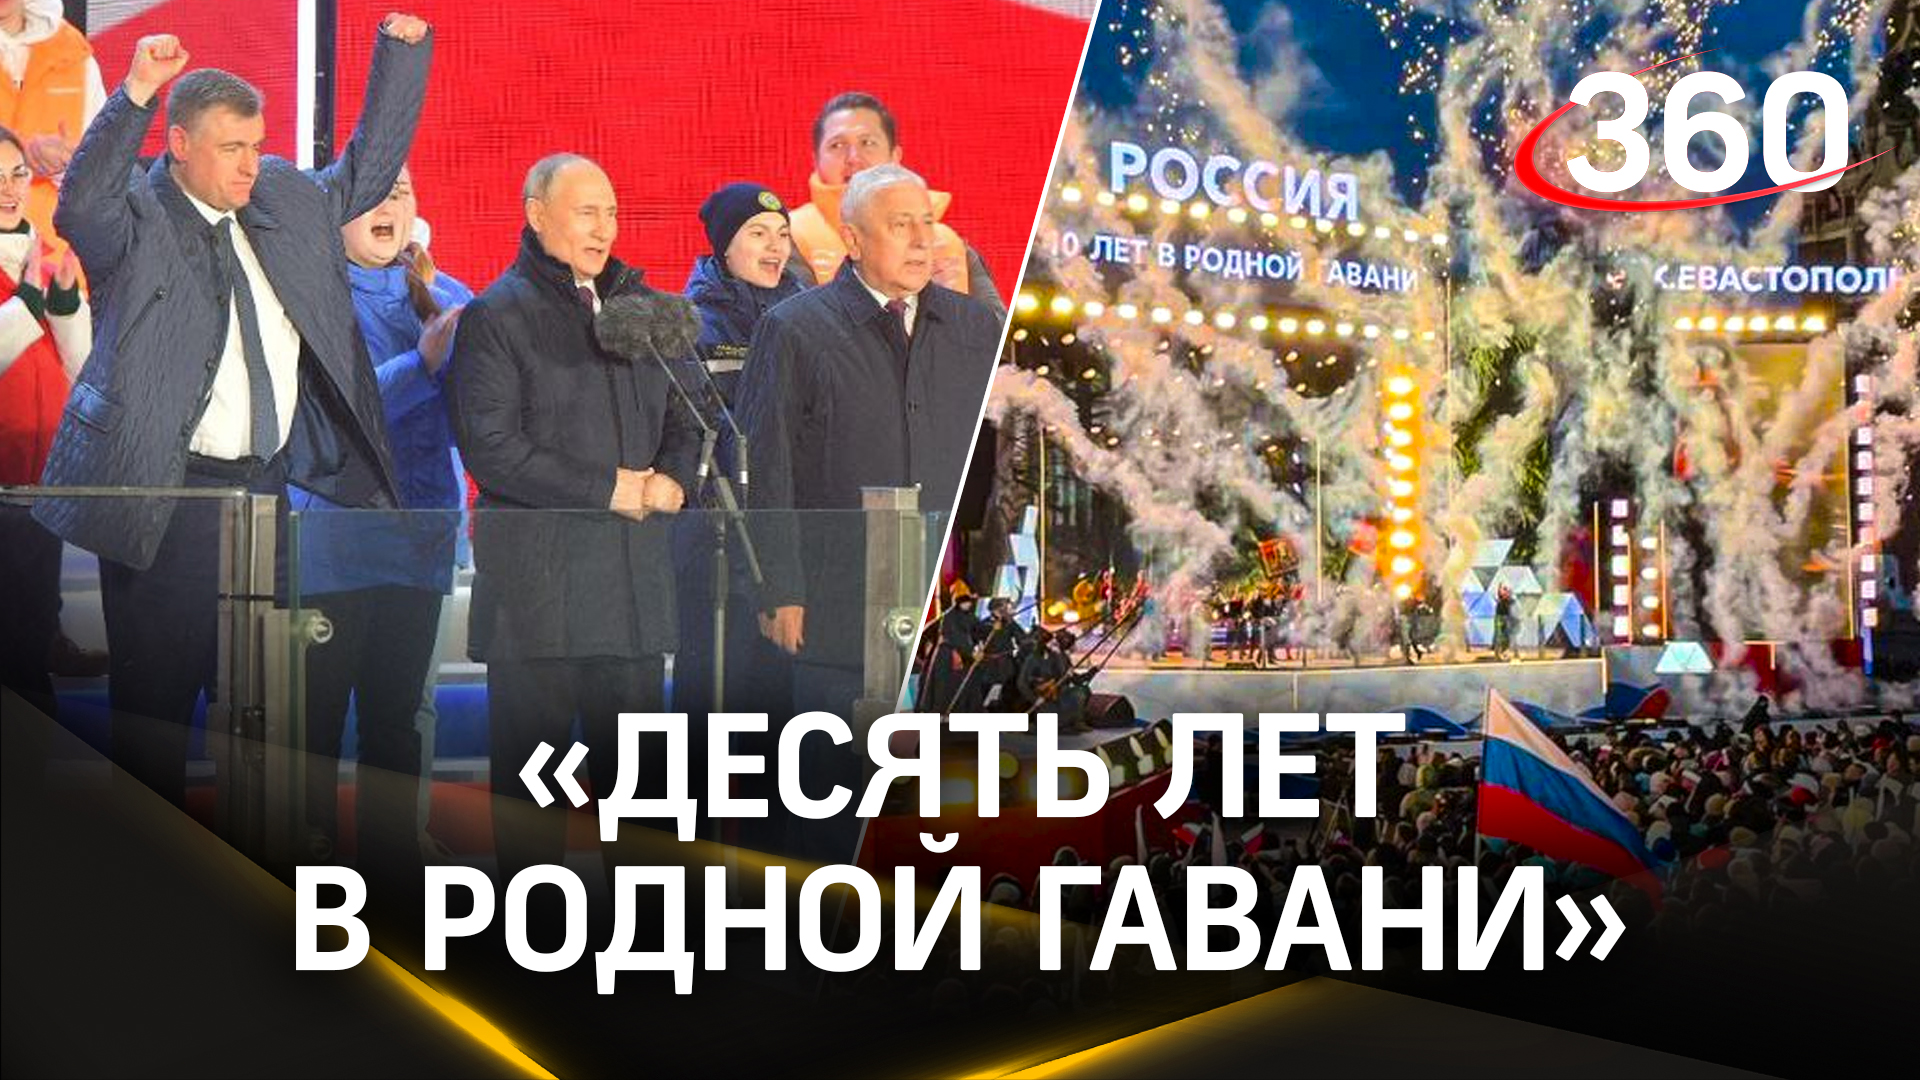 Путин, Лепс и Гагарина на одной сцене. Как в России отметили юбилей возвращения Крыма